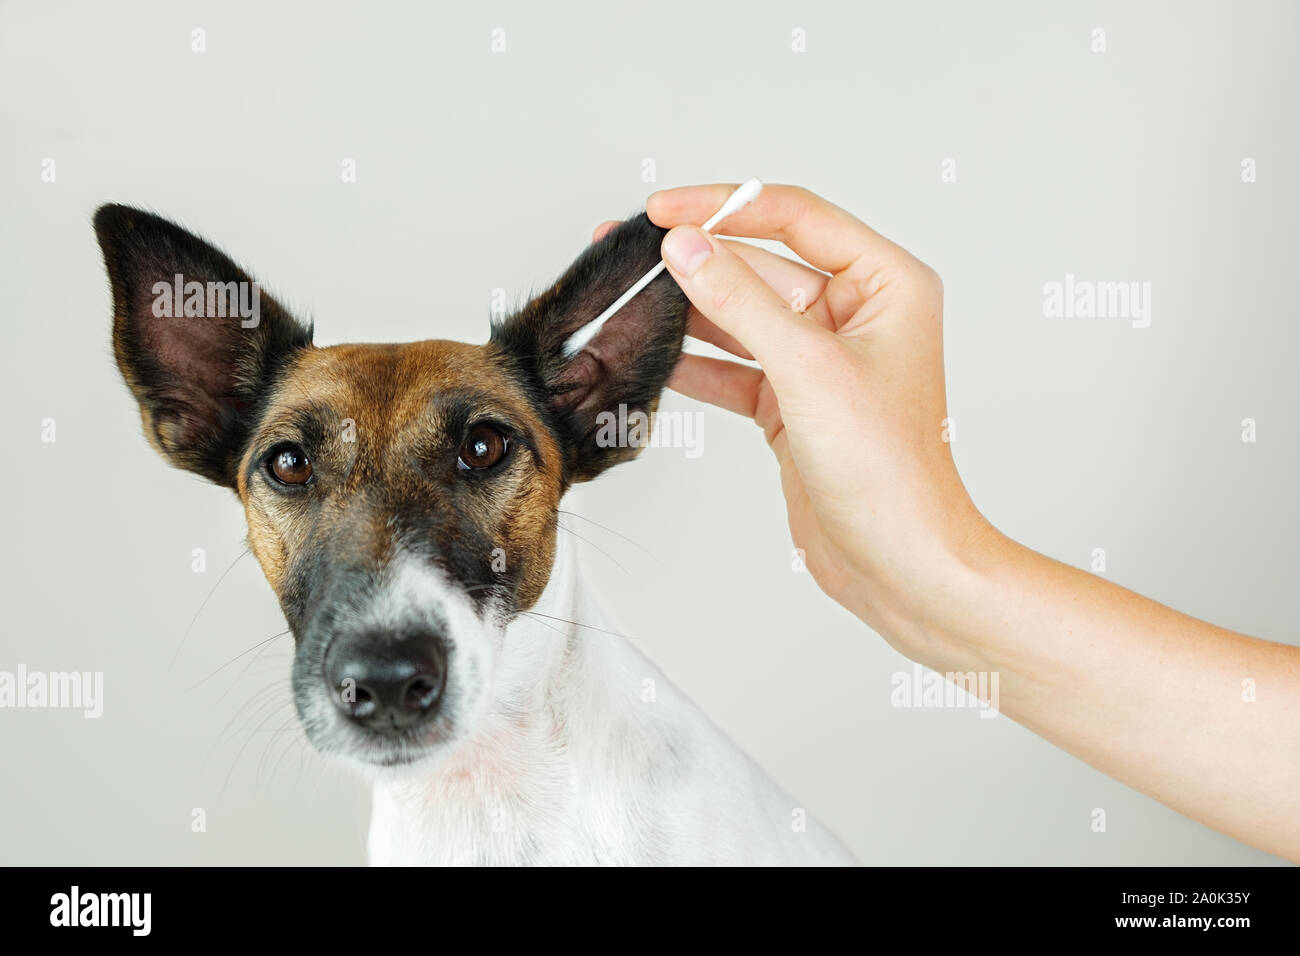 Reinigung Ohr eines Hundes mit einem Baumwolle Ohr kleben. Das Konzept der  Pflege des Hundes Gesundheit und Hygiene, Ohr Hund Ohrenentzündung und  Entlastung Stockfotografie - Alamy